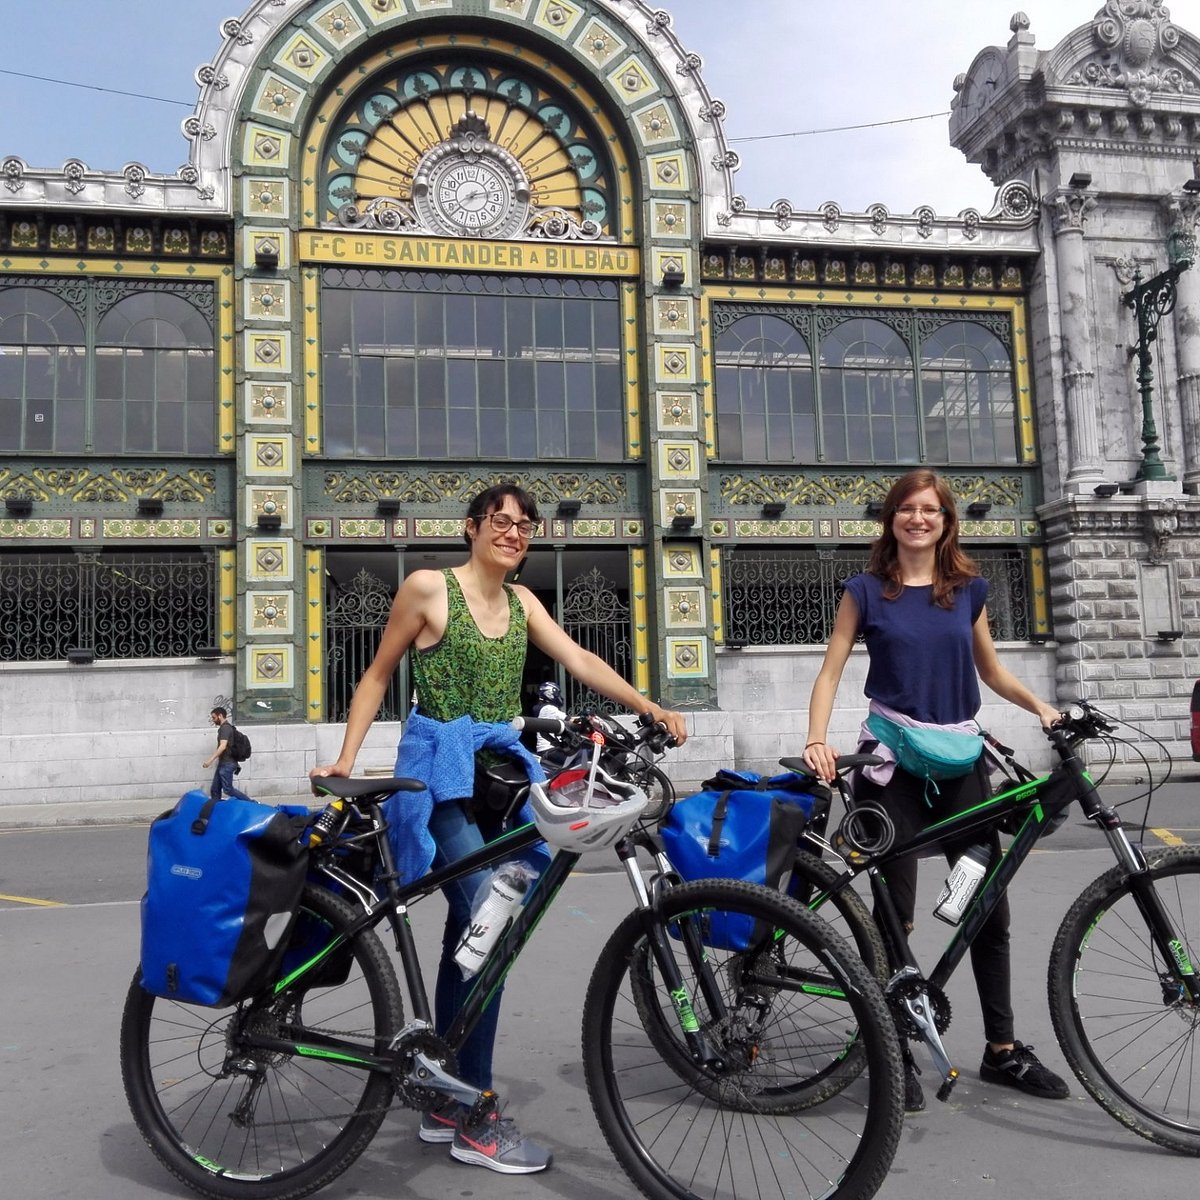 het internet magneet Profeet Urban Bike (Bilbao) - 2023 Alles wat u moet weten VOORDAT je gaat -  Tripadvisor